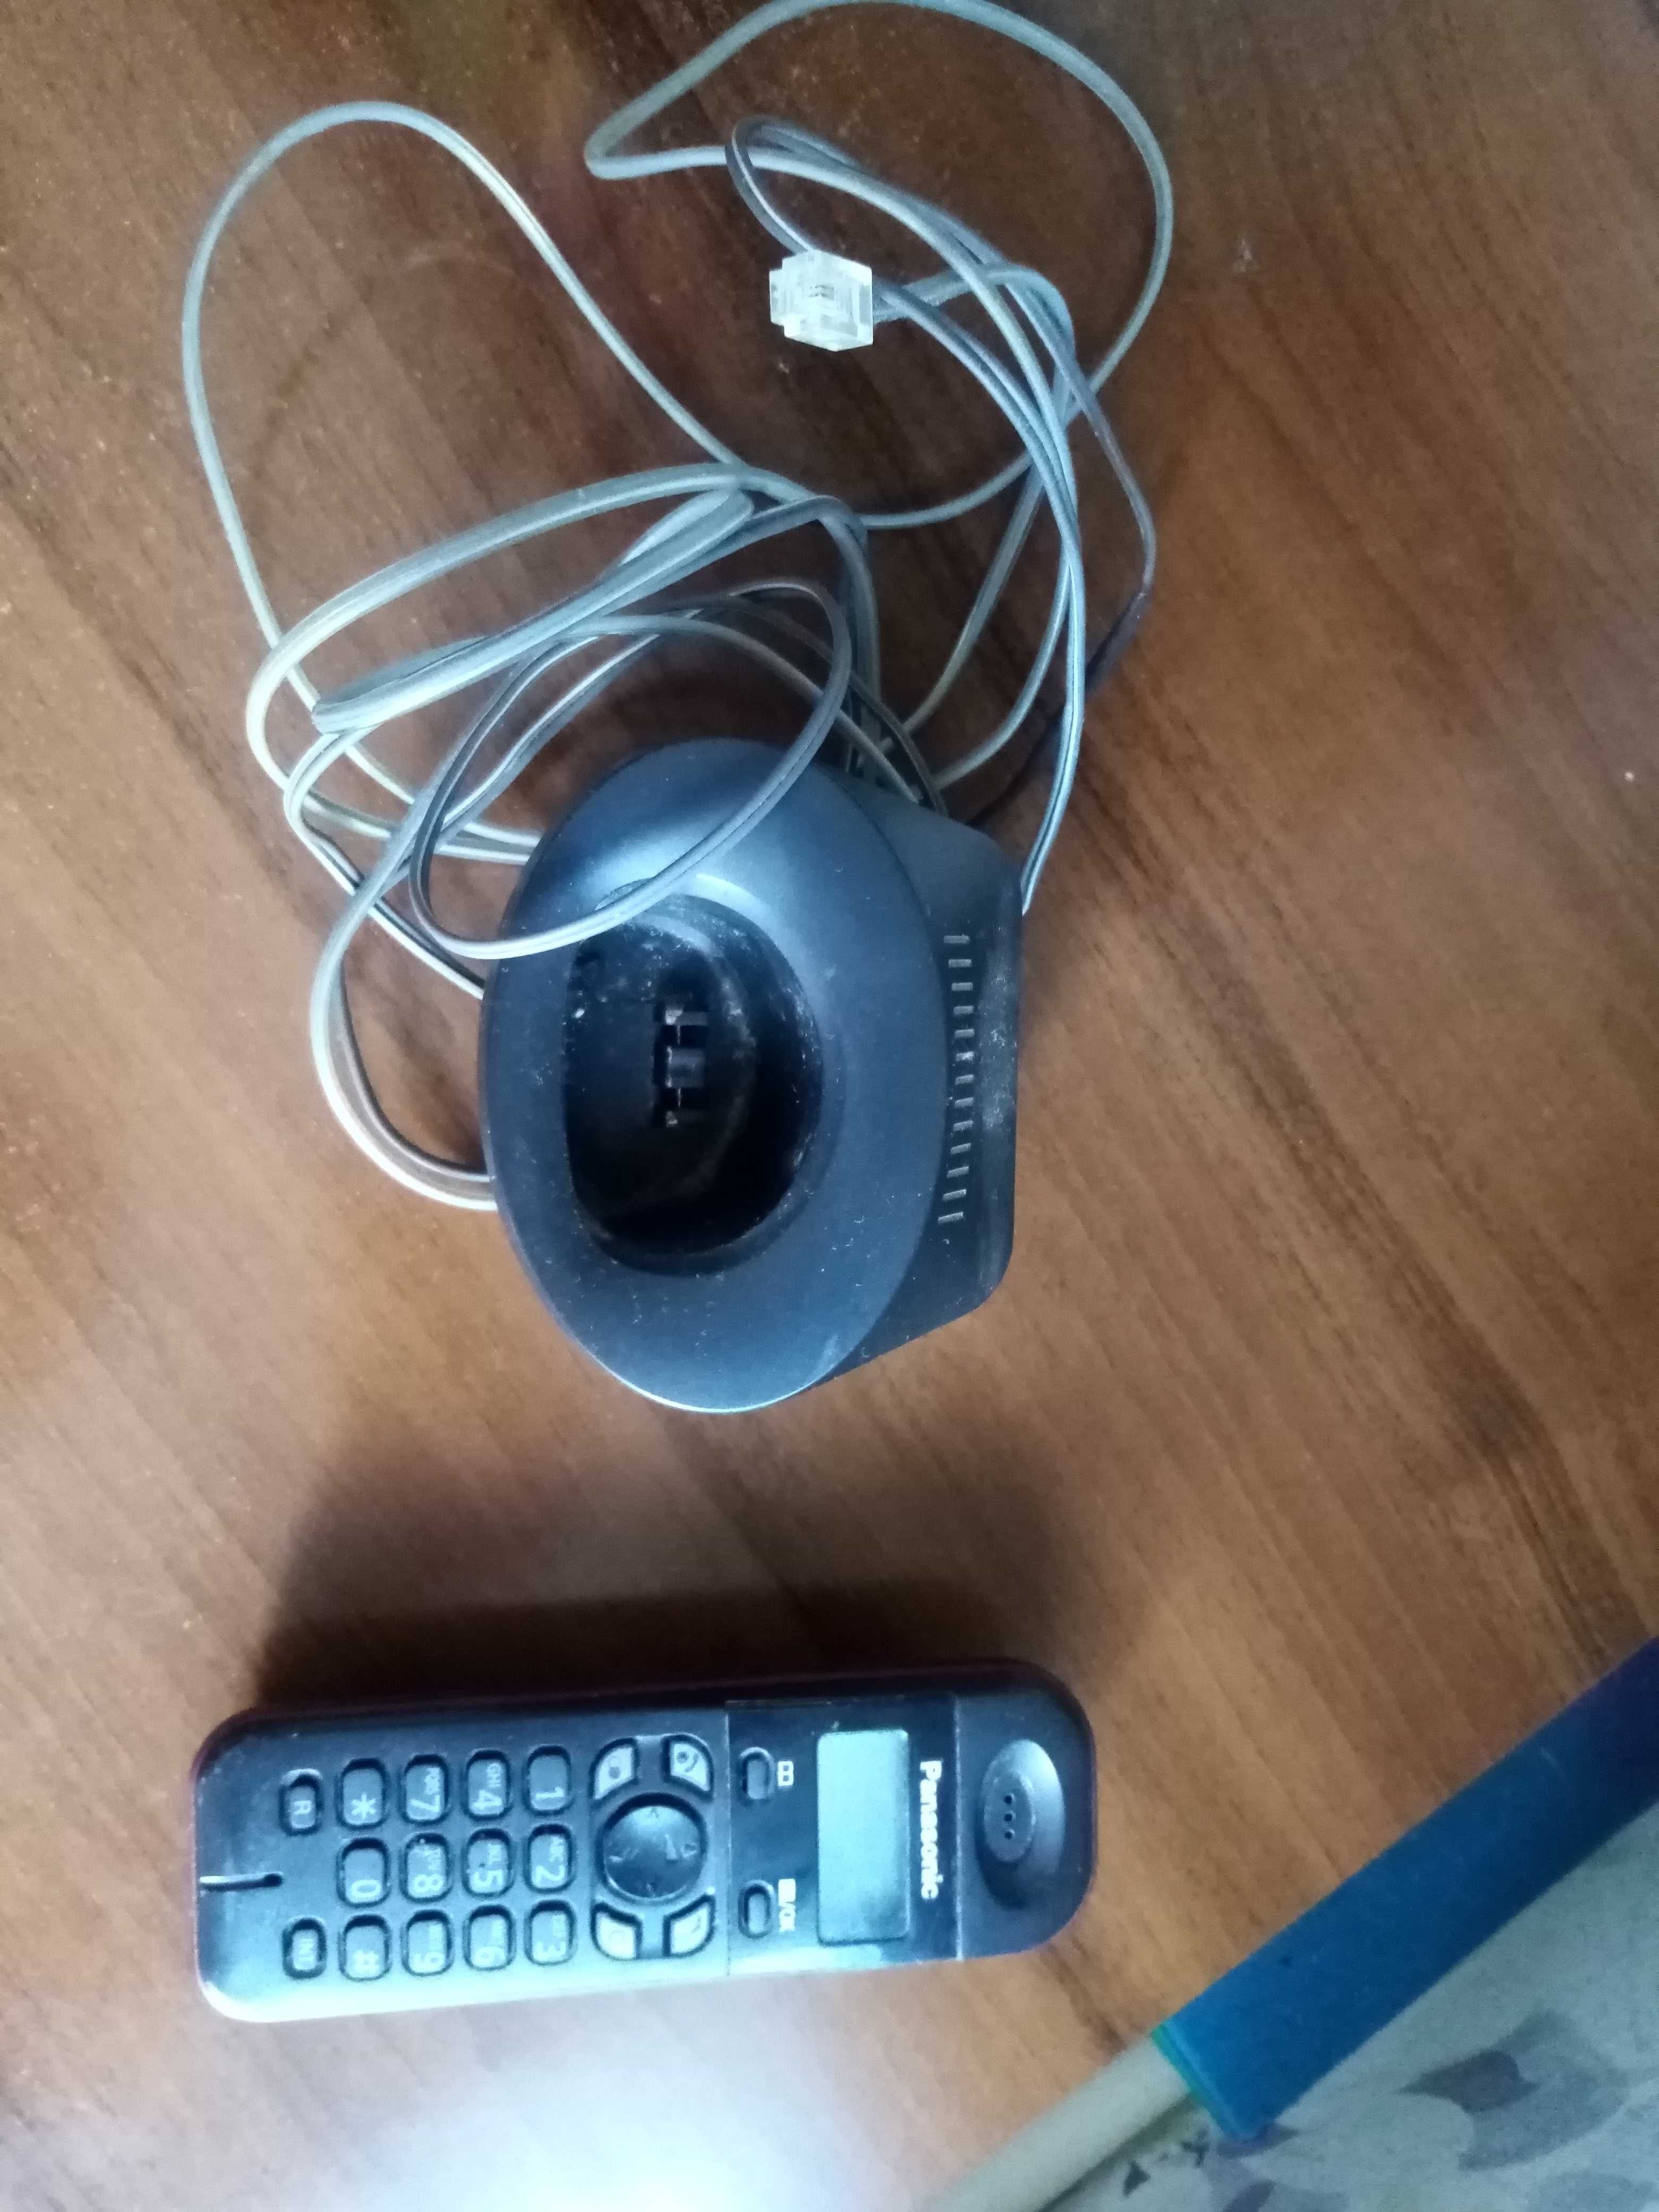 Телефон Panasonic безпроводной